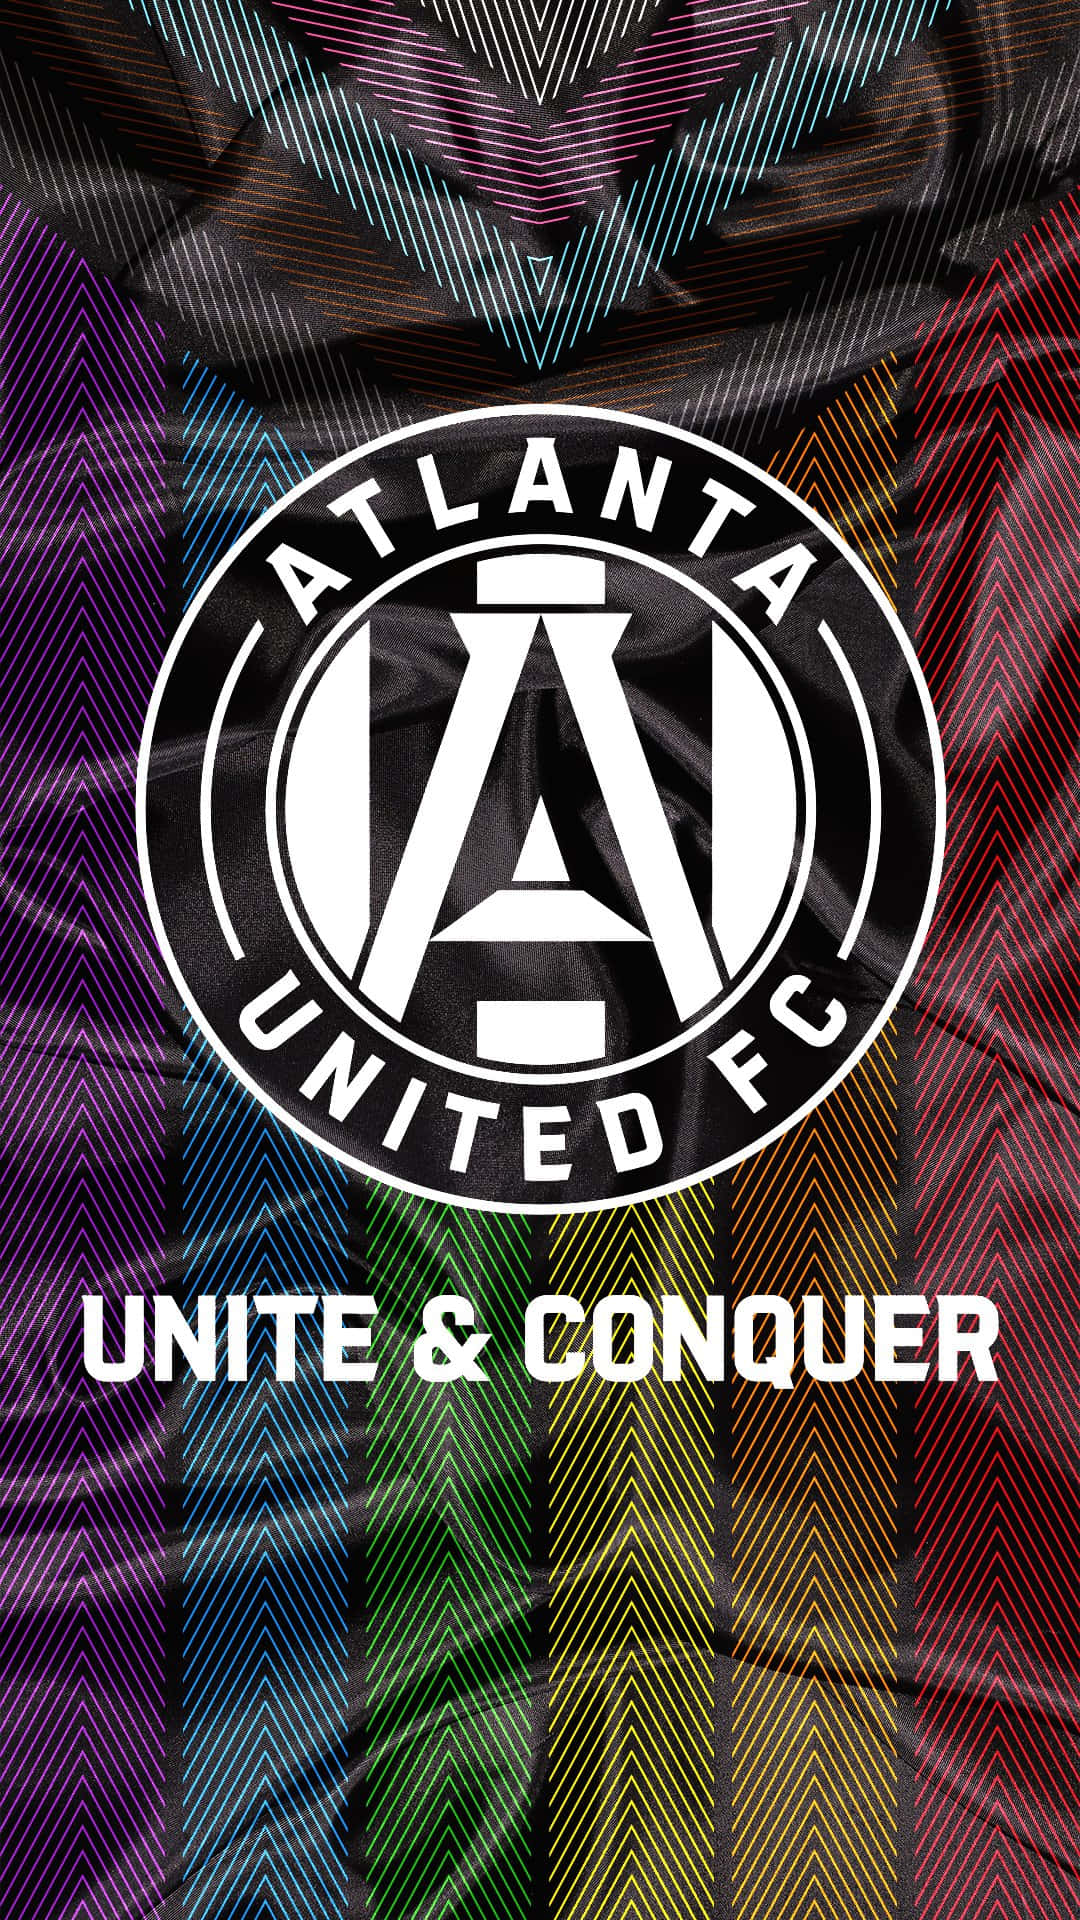 Atlantaunited Fc United And Conquer - Atlanta United Fc Enade Och Erövrar. Wallpaper